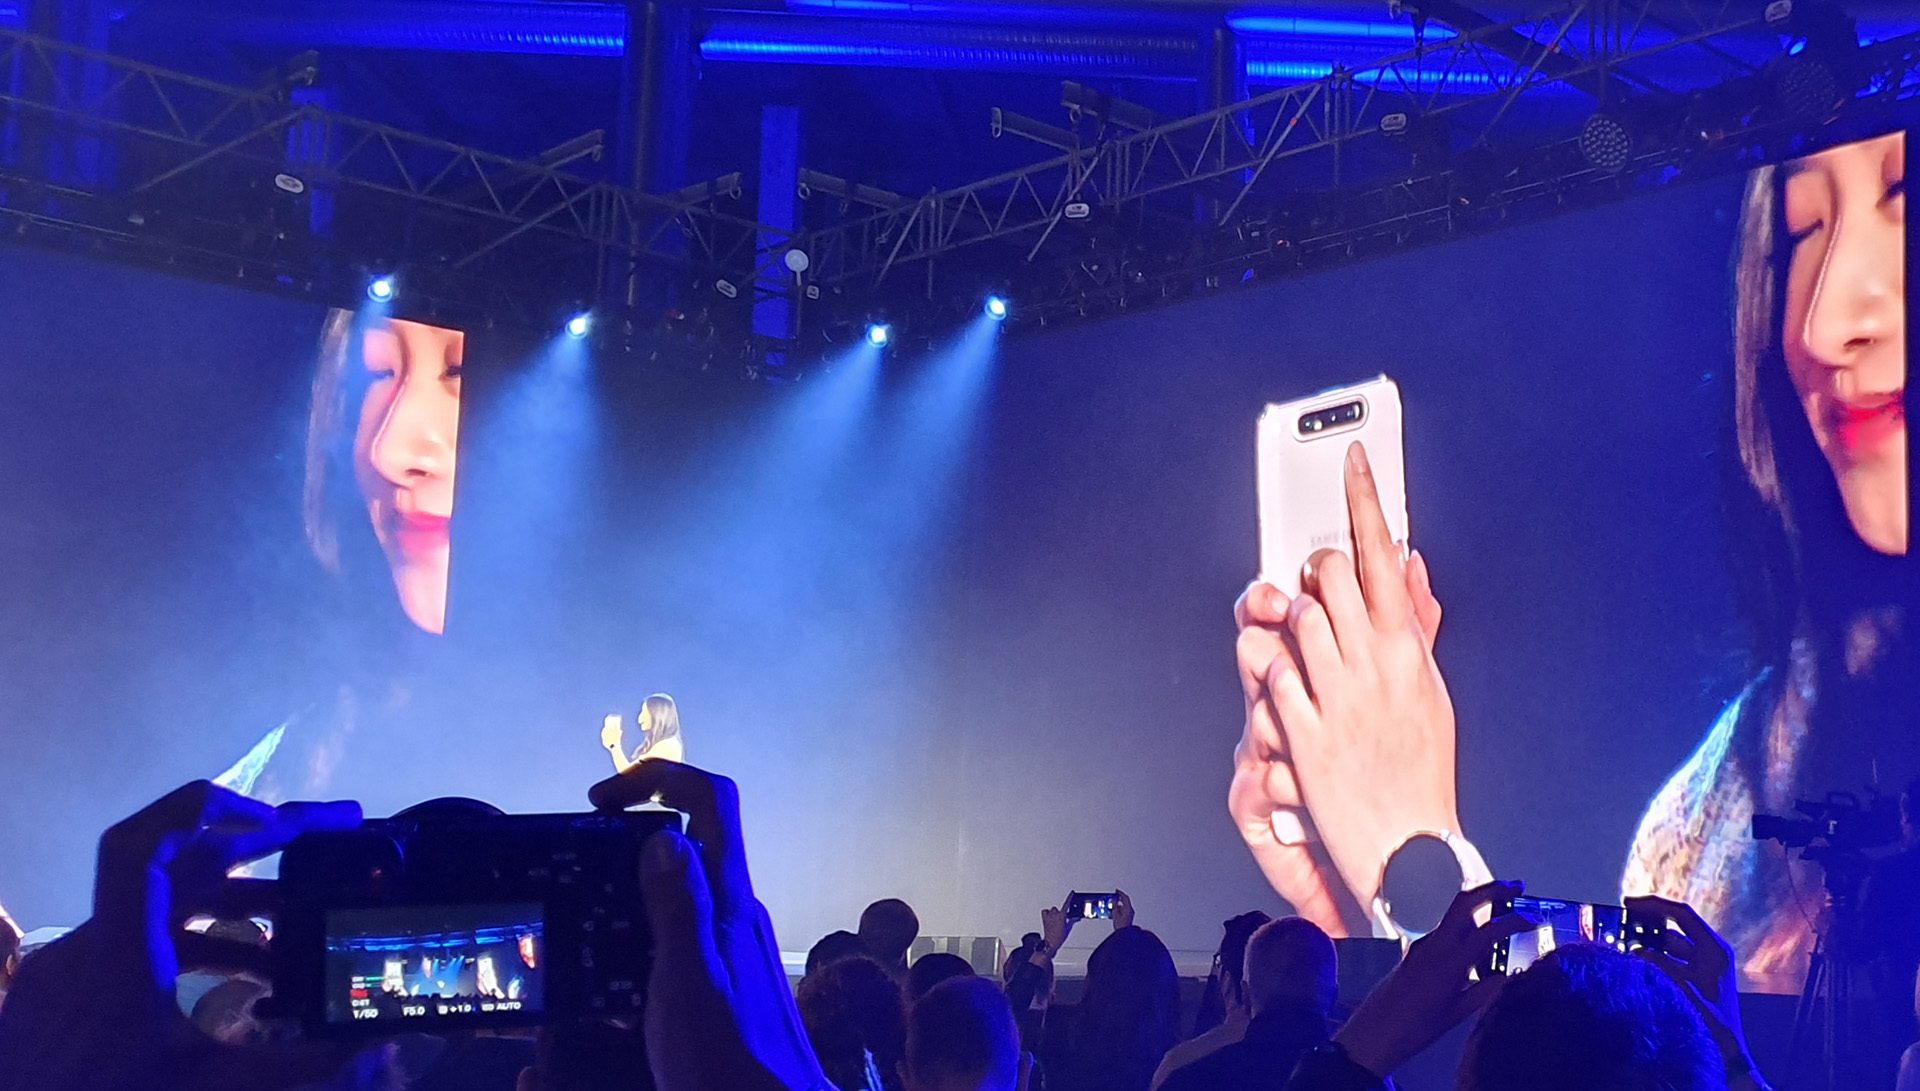 Samsungs super-selfie kamera